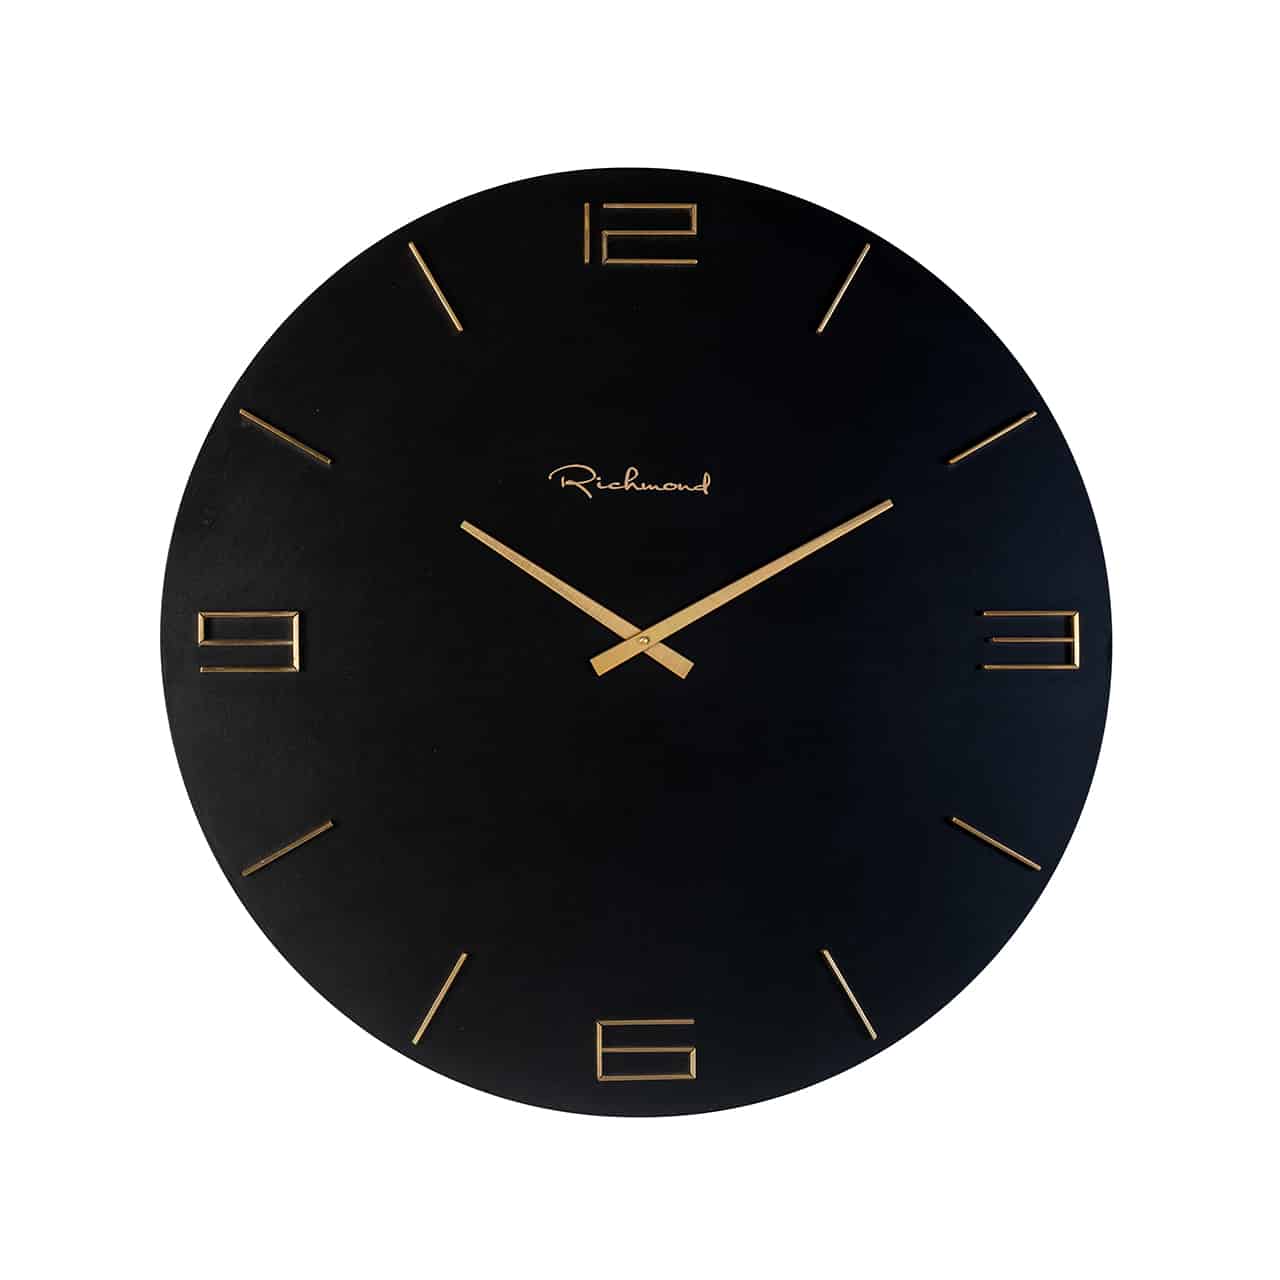 Schwarze, runde Wanduhr; goldene Uhrzeiger, darauf 3-6-9-12 in gold, dazwischen im 5-Minutenabstand jeweils zwei dünne goldene Leisten. 